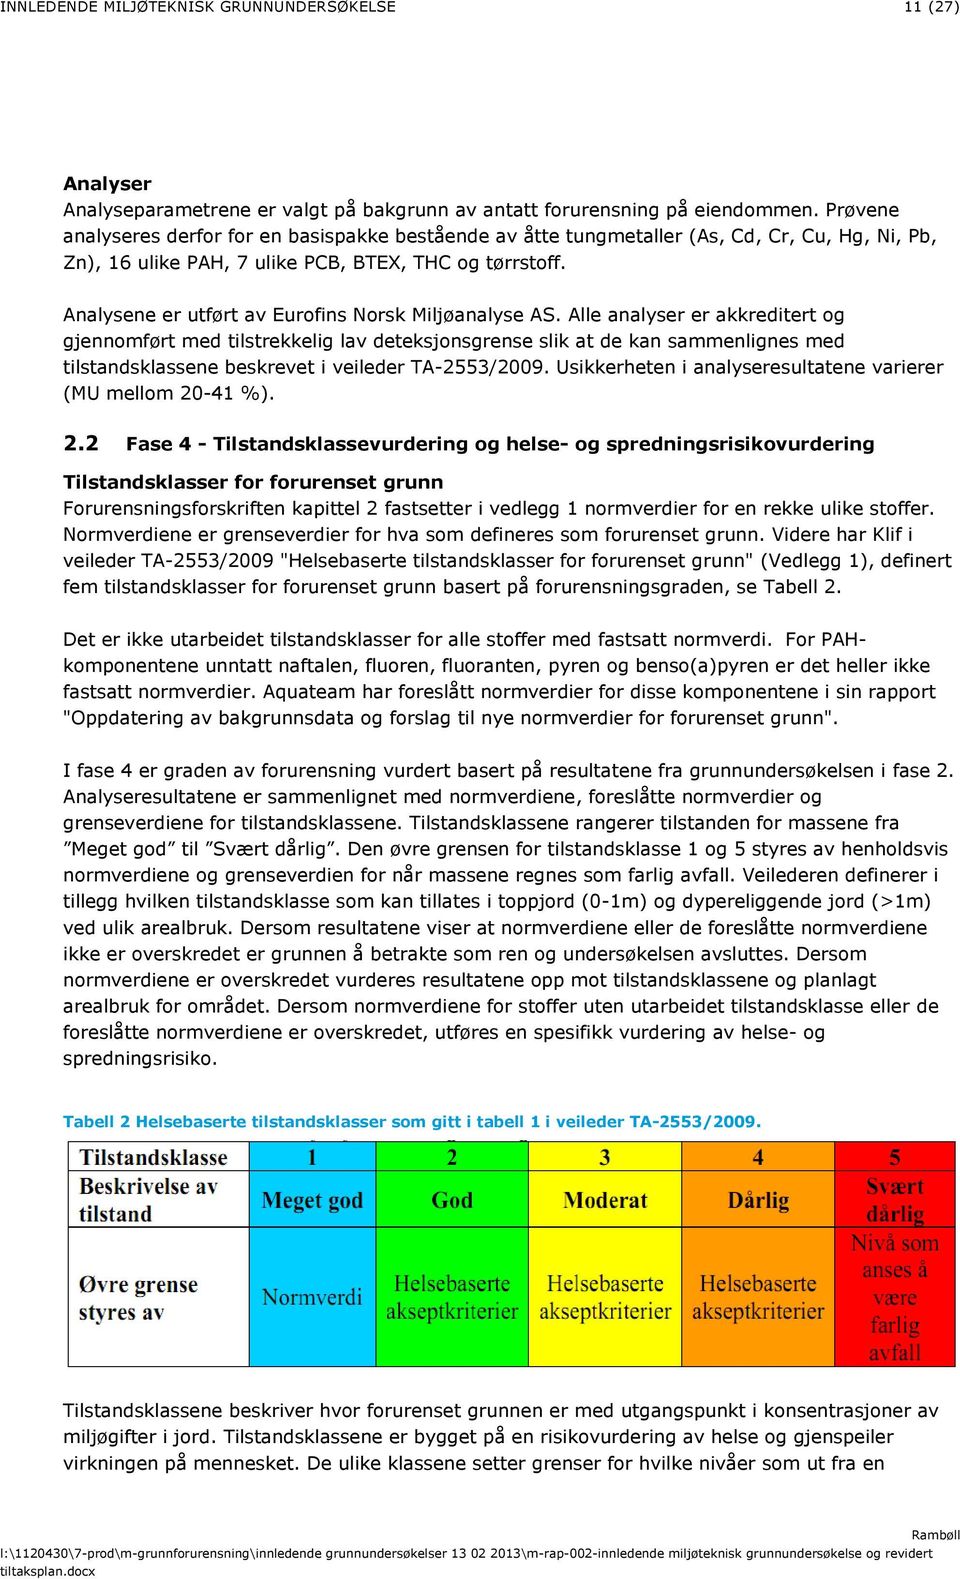 Analysene er utført av Eurofins Norsk Miljøanalyse AS.